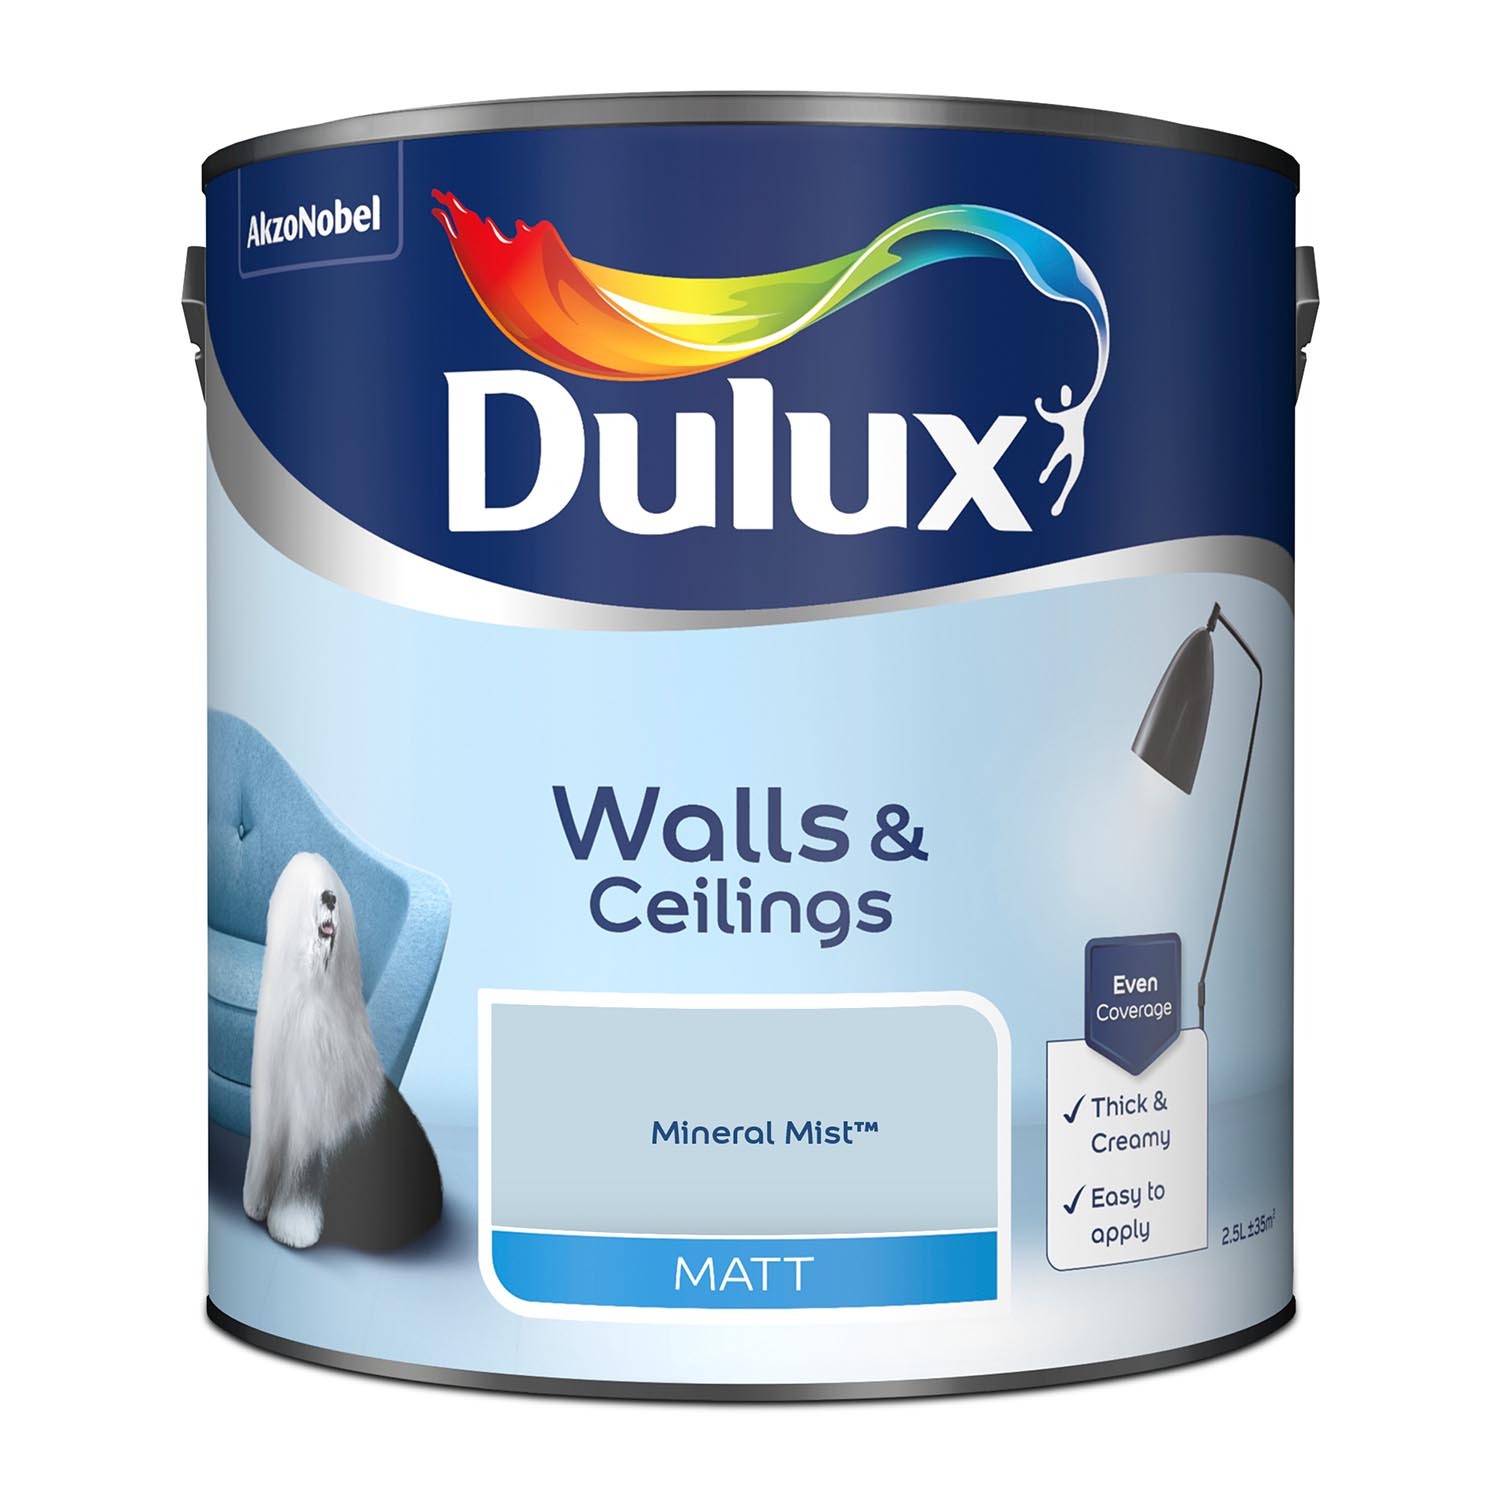 Dulux Walls & Ceilings Mineral Mist Matt Emulsion Paint 2.5L Image 2